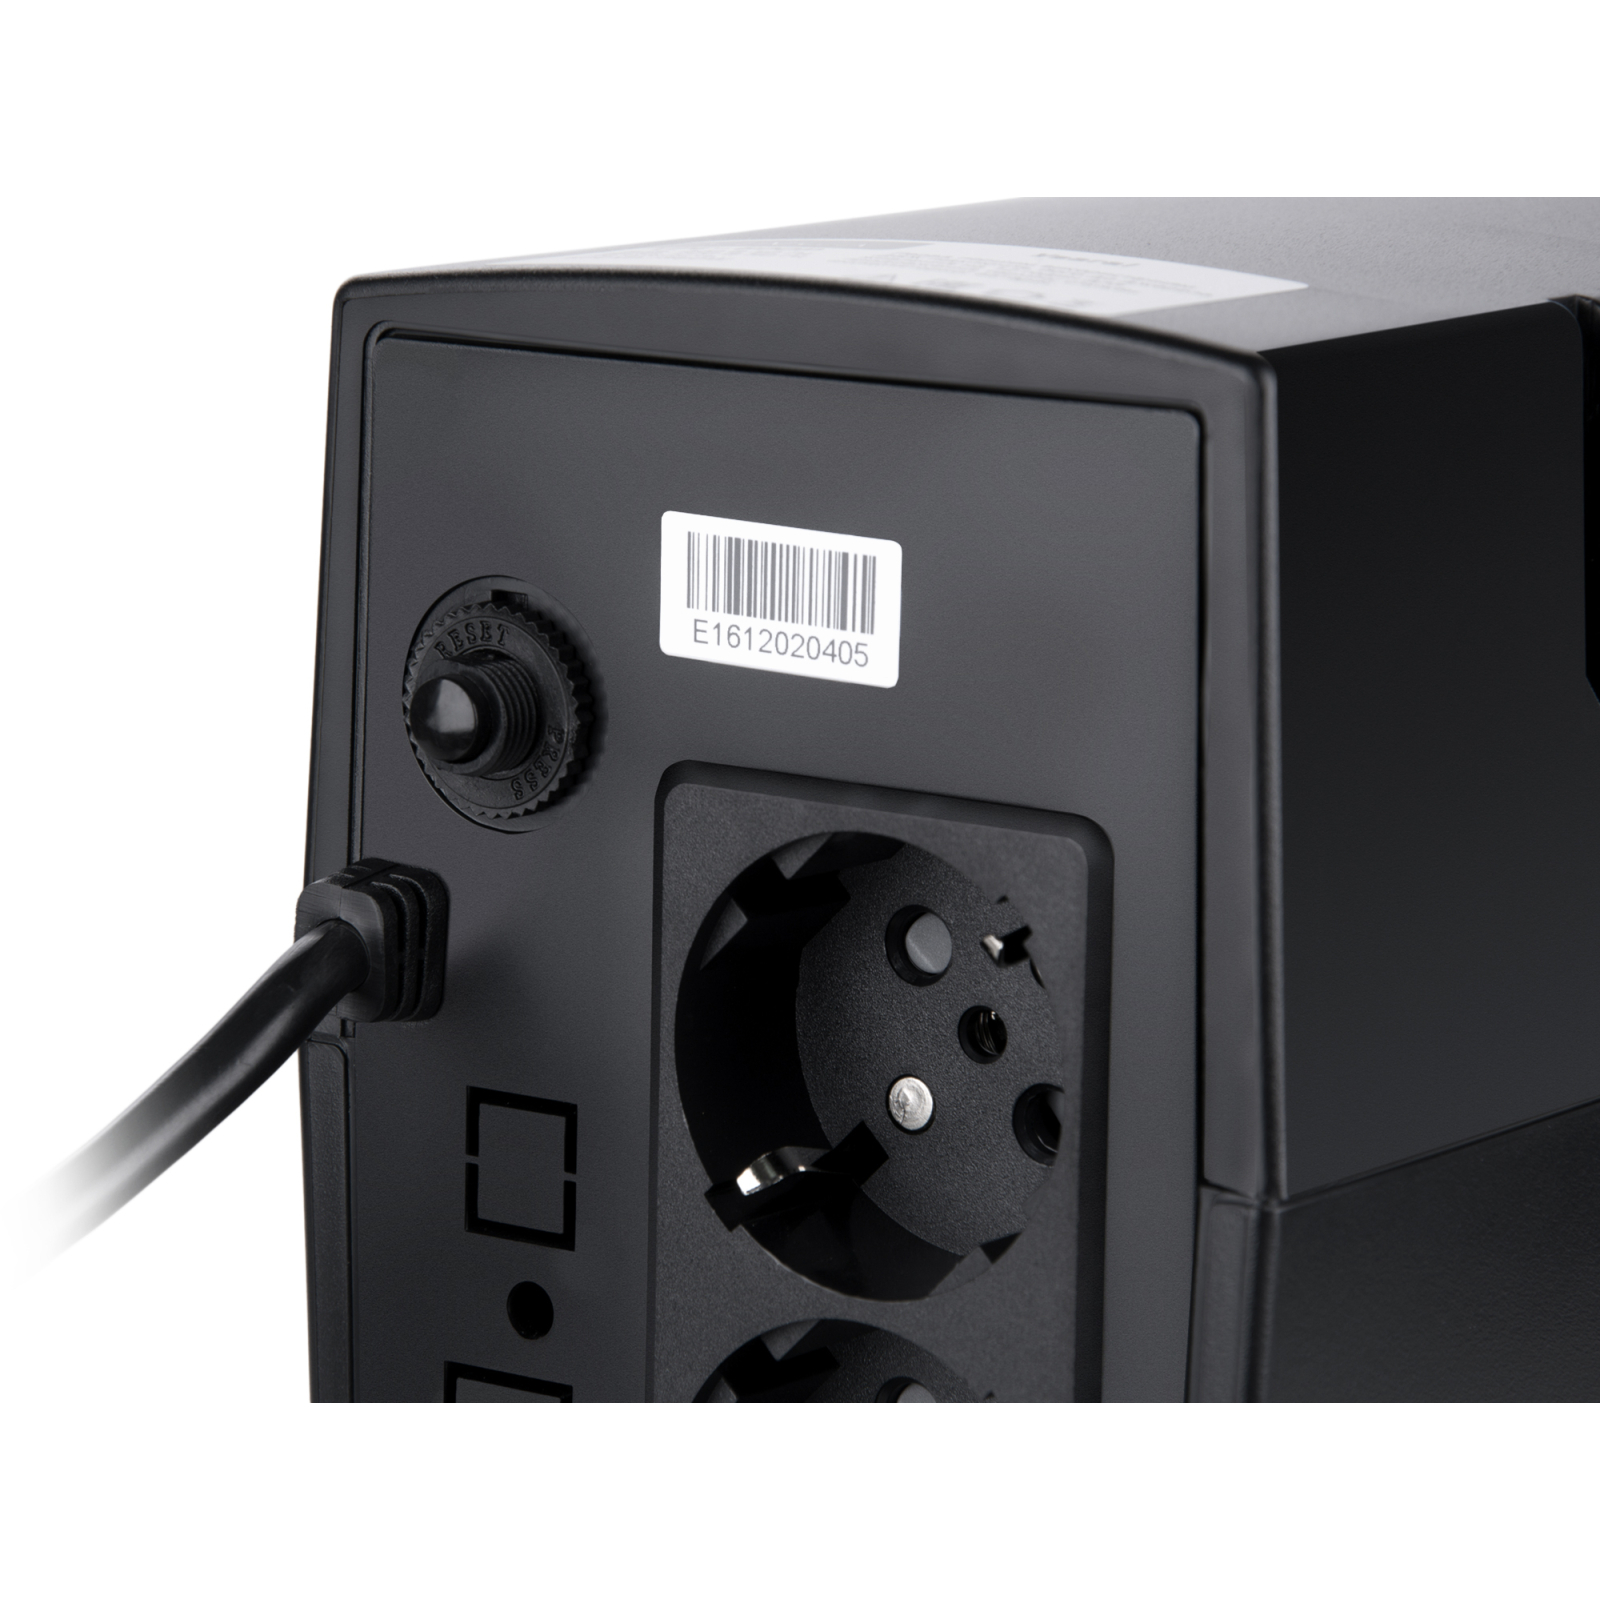 Пристрій безперебійного живлення Vinga LCD 600VA plastic case (VPC-600P) зображення 5